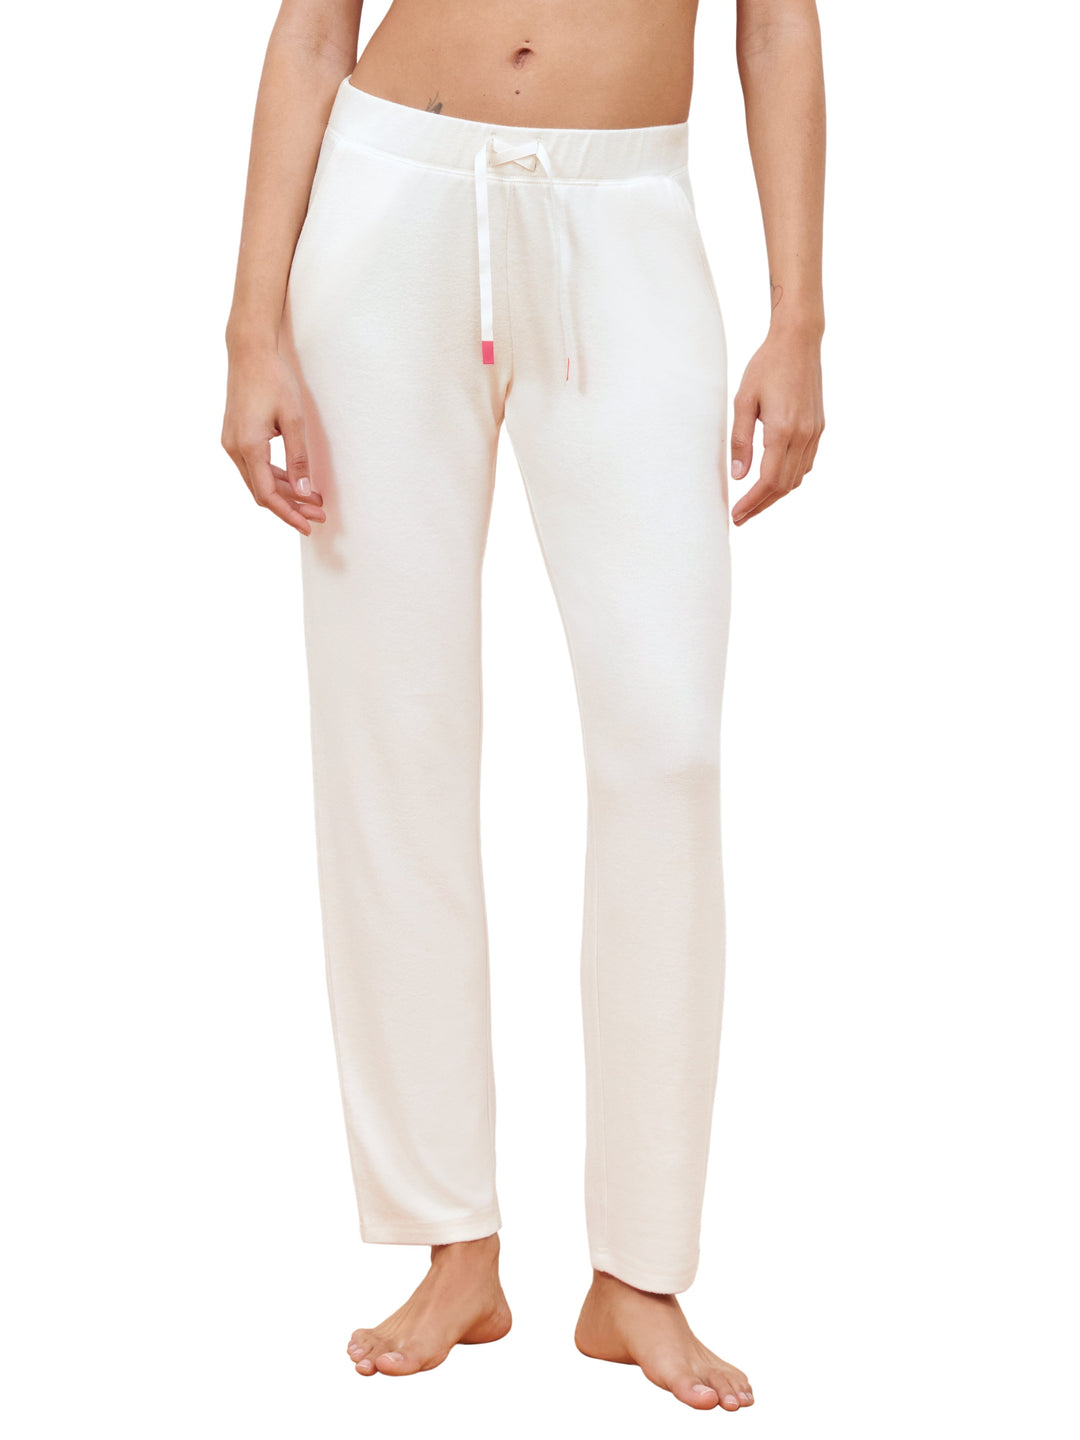 Passionata - Брюки Guimauve Белые пижамные брюки Passionata